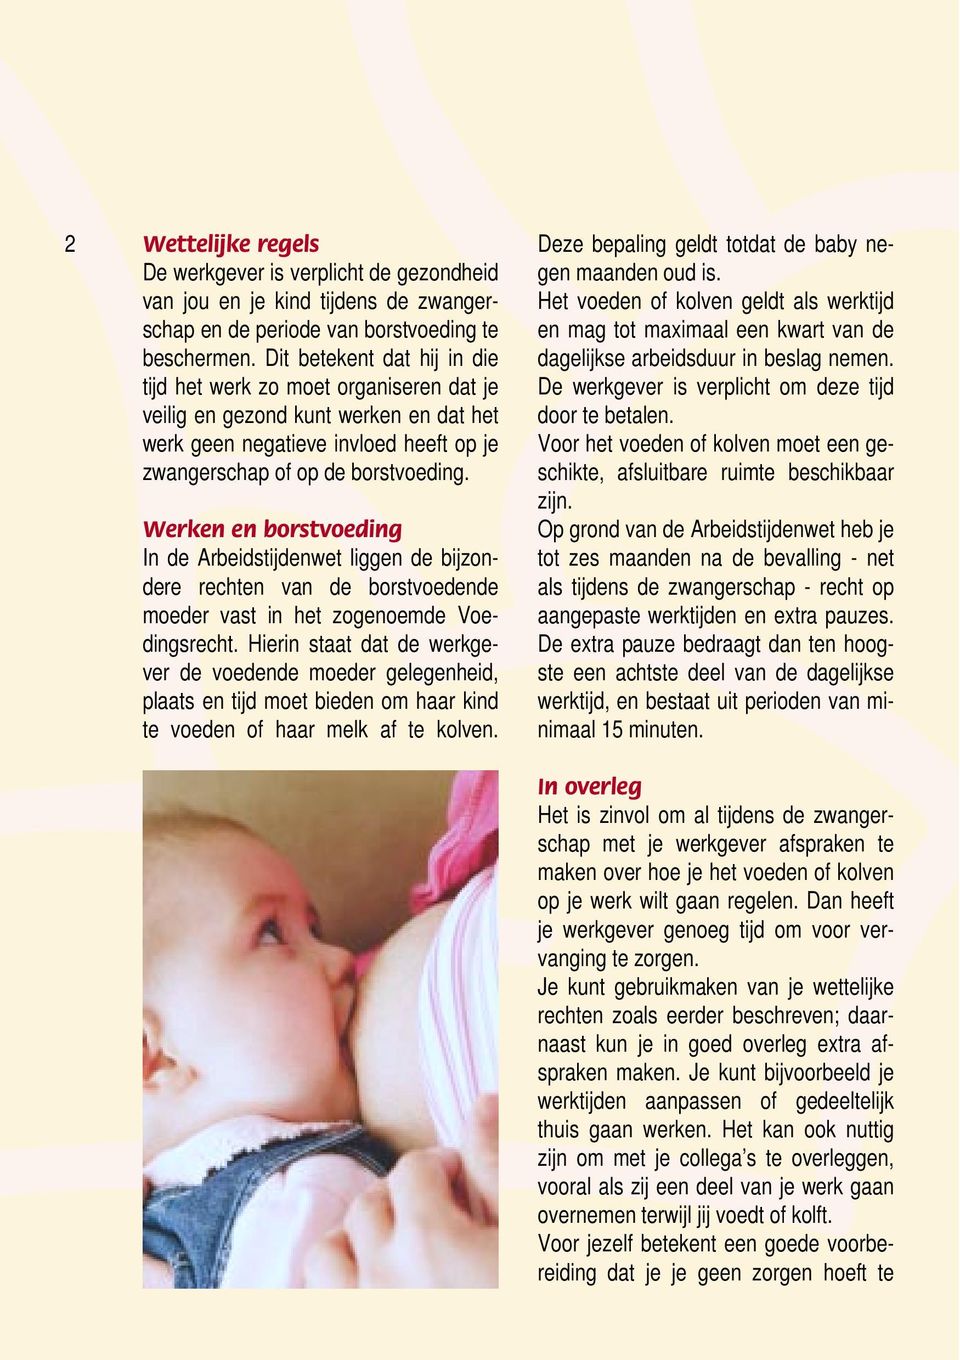 Werken en borstvoeding In de Arbeidstijdenwet liggen de bijzondere rechten van de borstvoedende moeder vast in het zogenoemde Voedingsrecht.